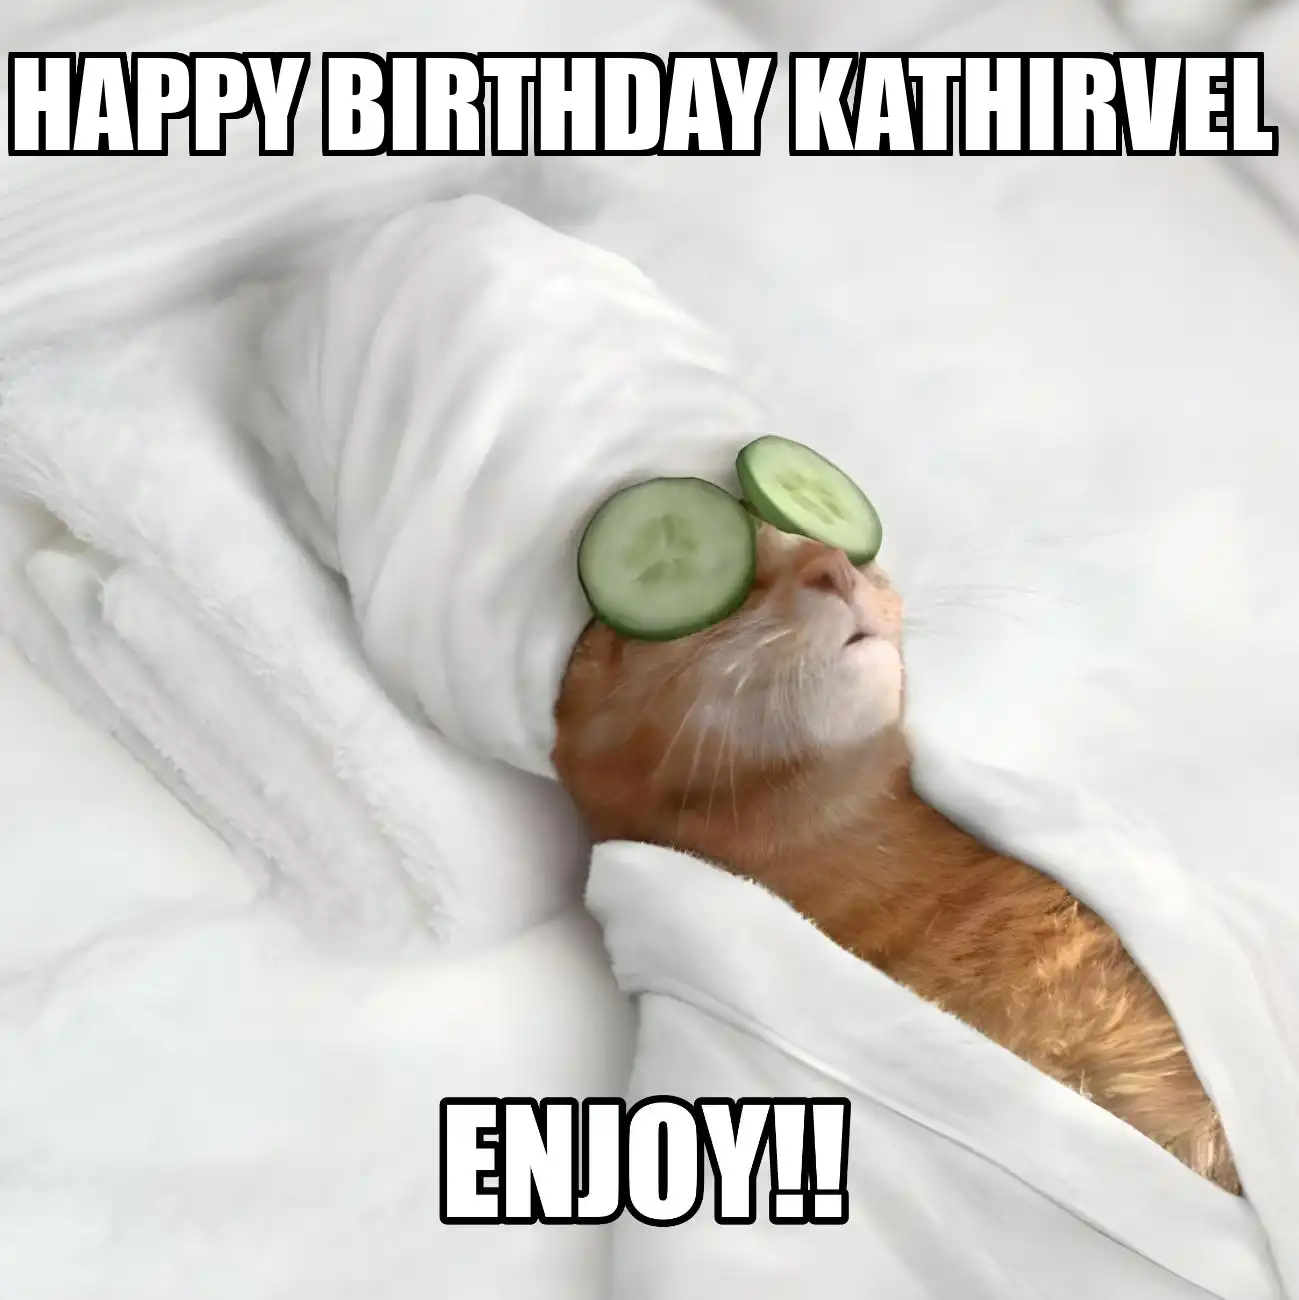 Happy Birthday Kathirvel Enjoy Cat Meme